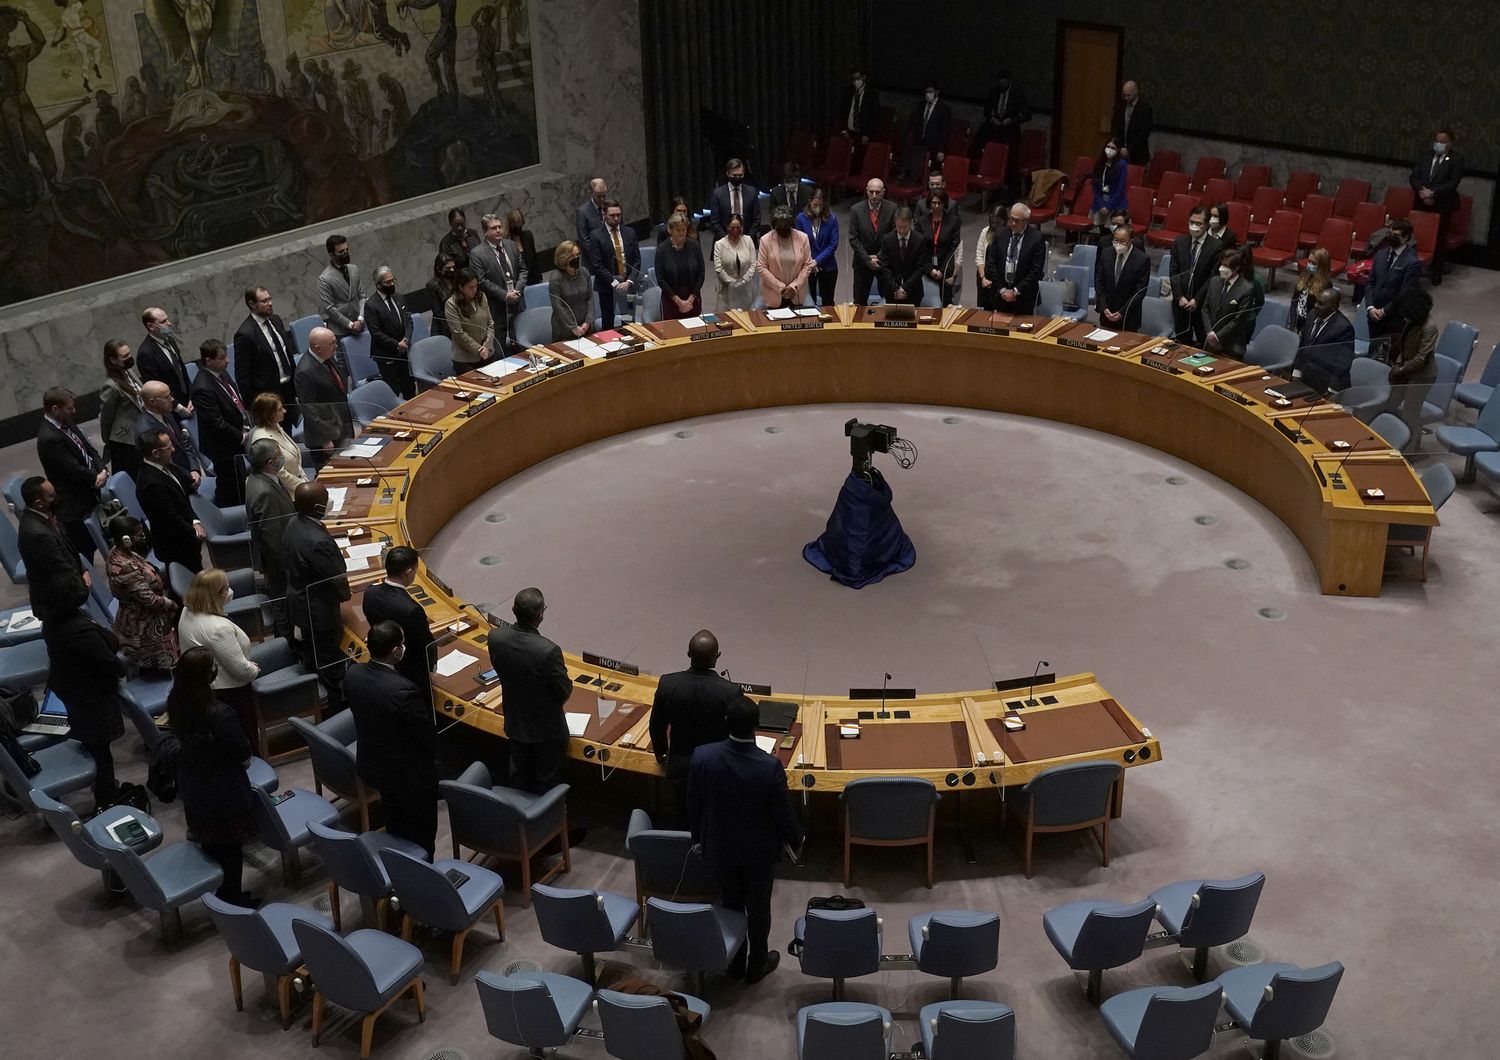 La riunione del Consiglio di sicurezza delle Nazioni Unite